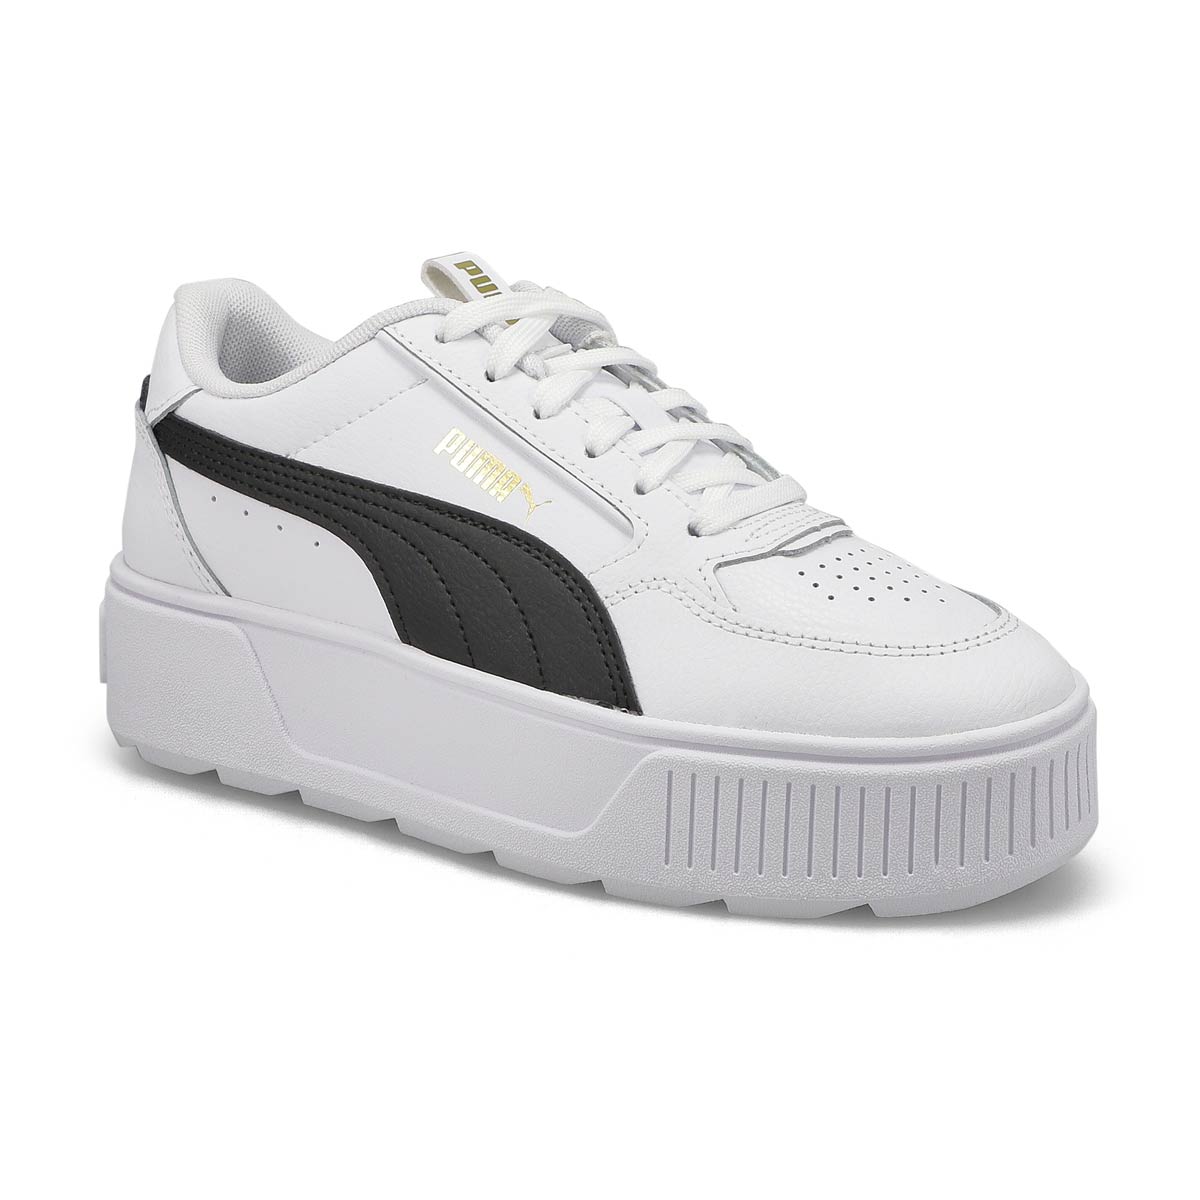 Girls' Karmen Rebelle Jr Sneaker - White/Black